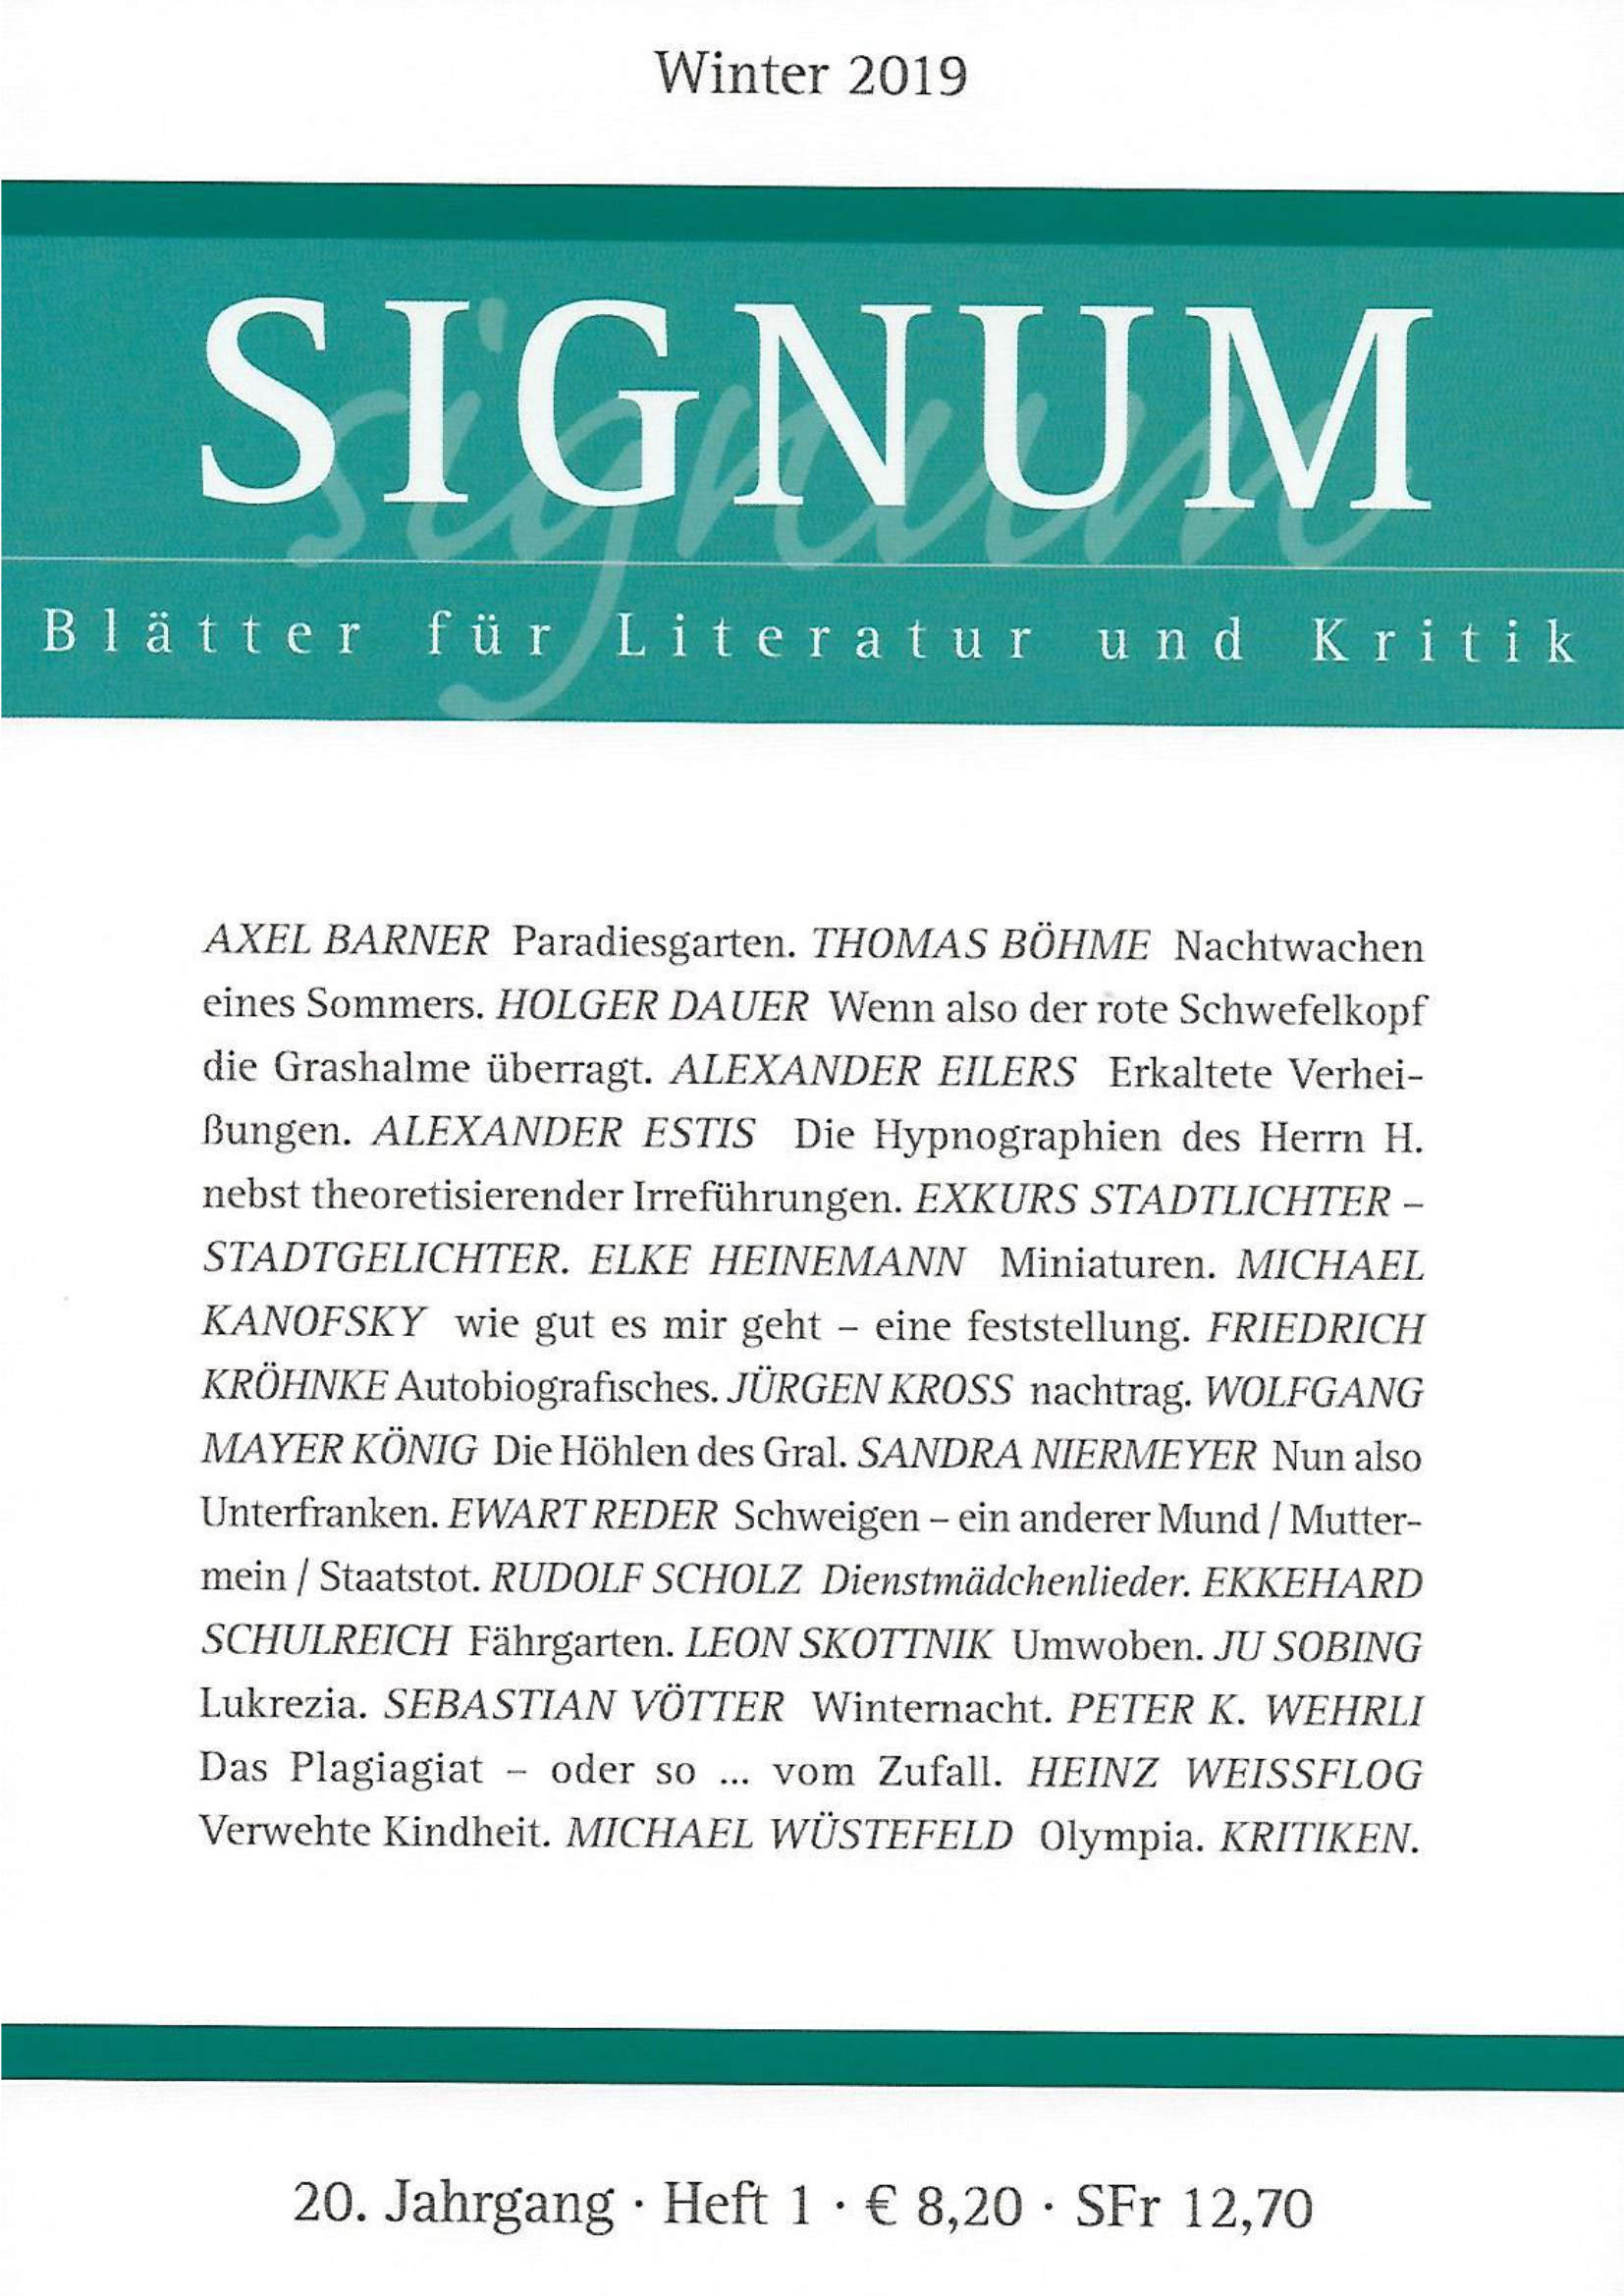 Signum. Blätter für Literatur und Kritik, Winter 2019